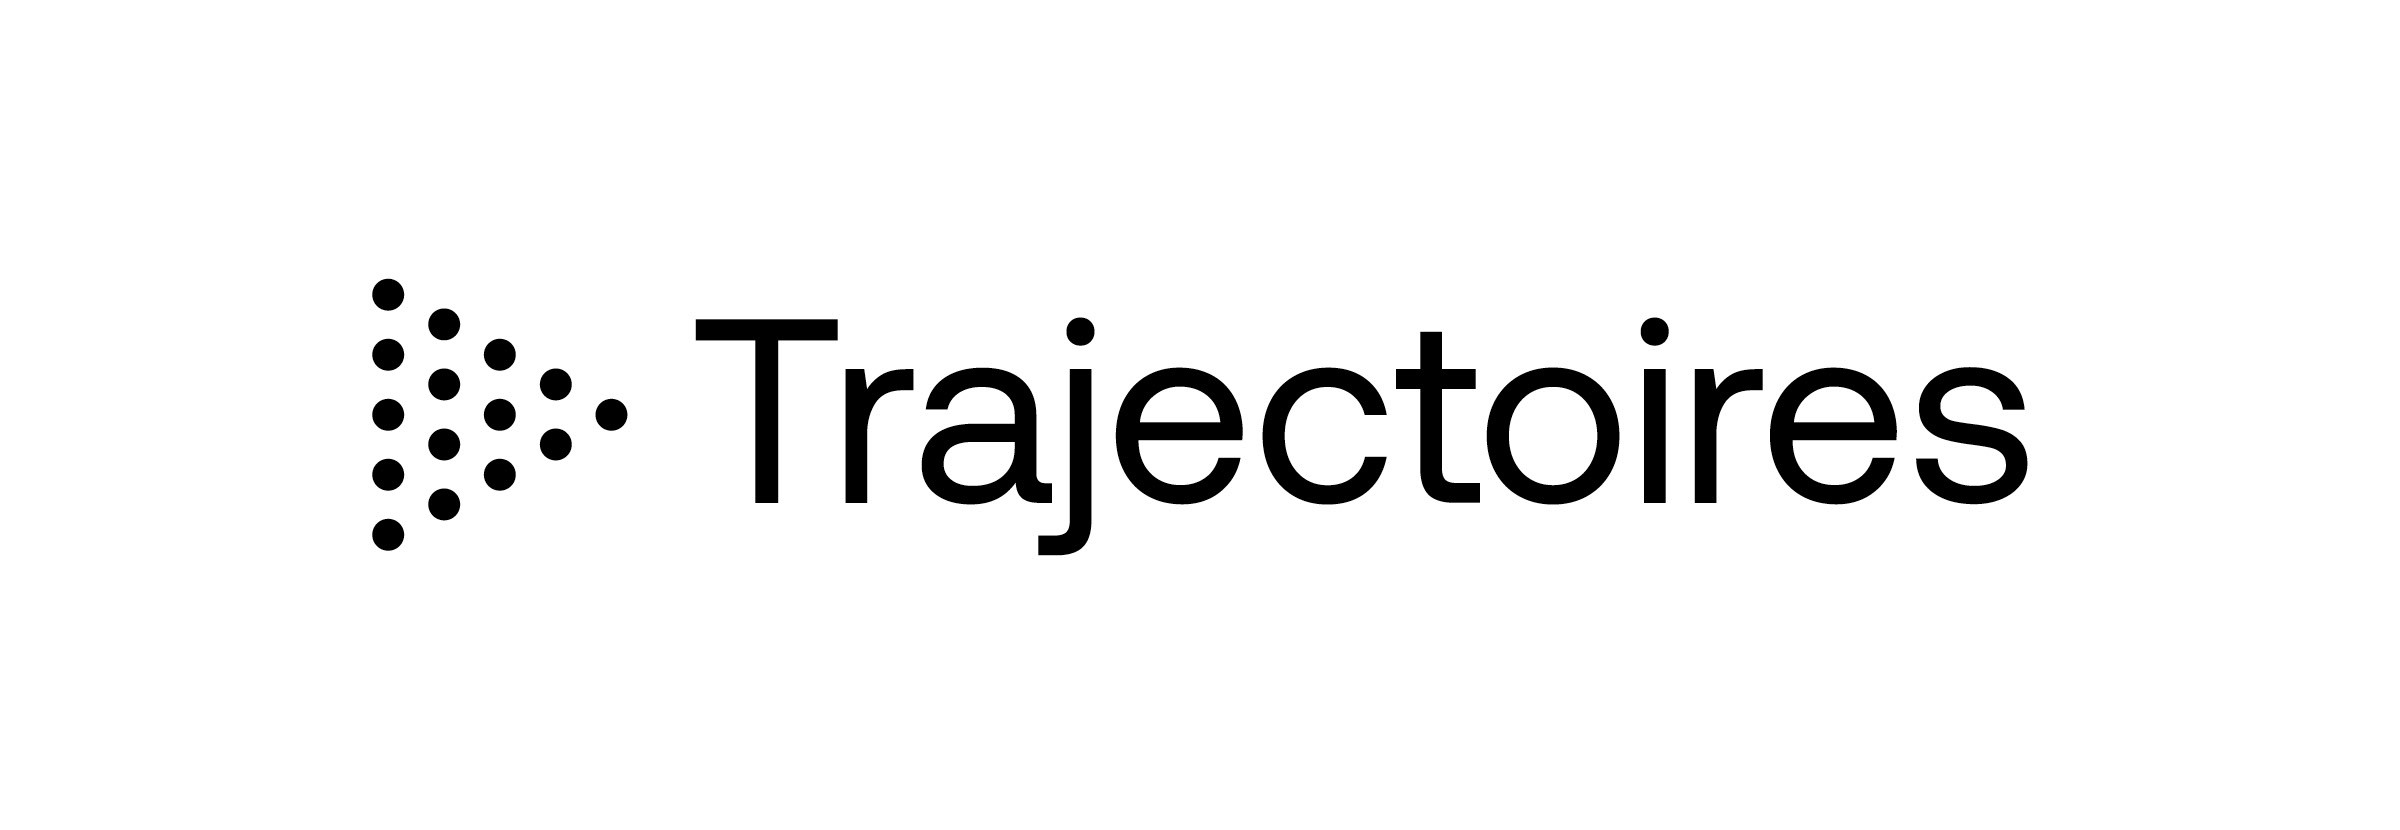 Trajectoires - logo